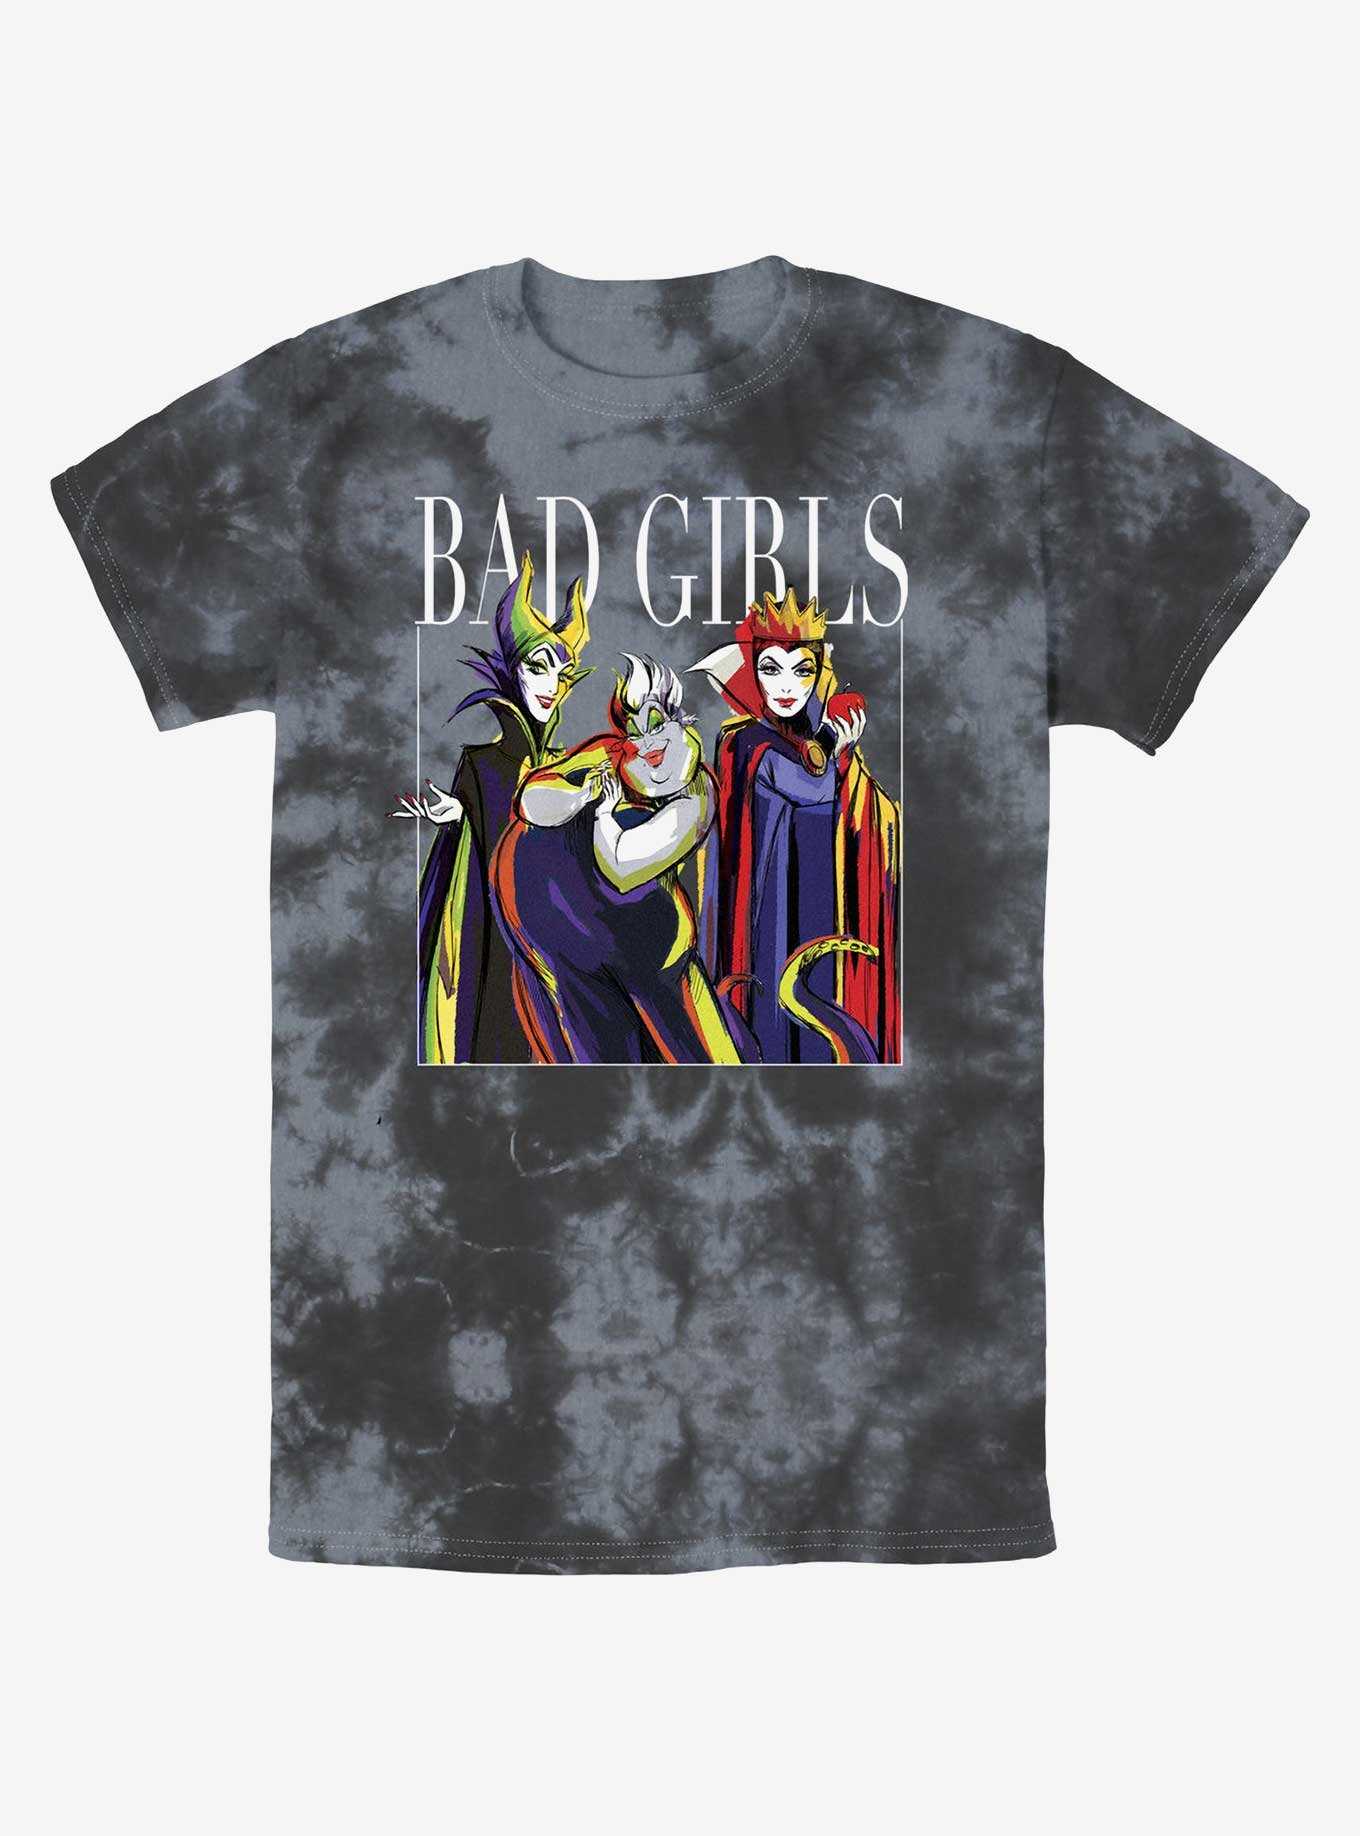 Disney Villains Bad Girls Pose Tie-Dye T-Shirt, , hi-res